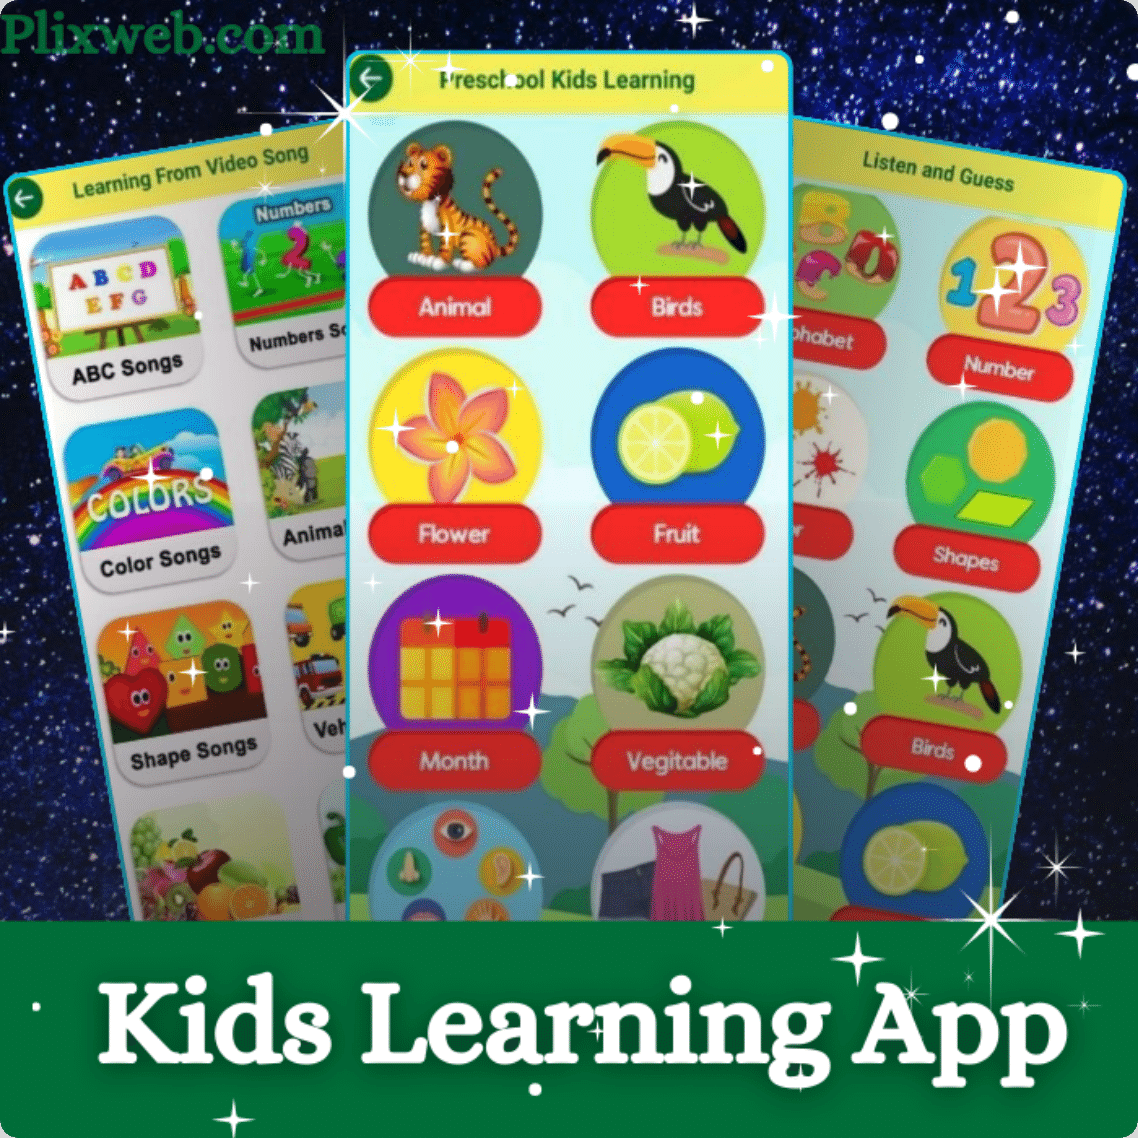 Kids Learning App Development